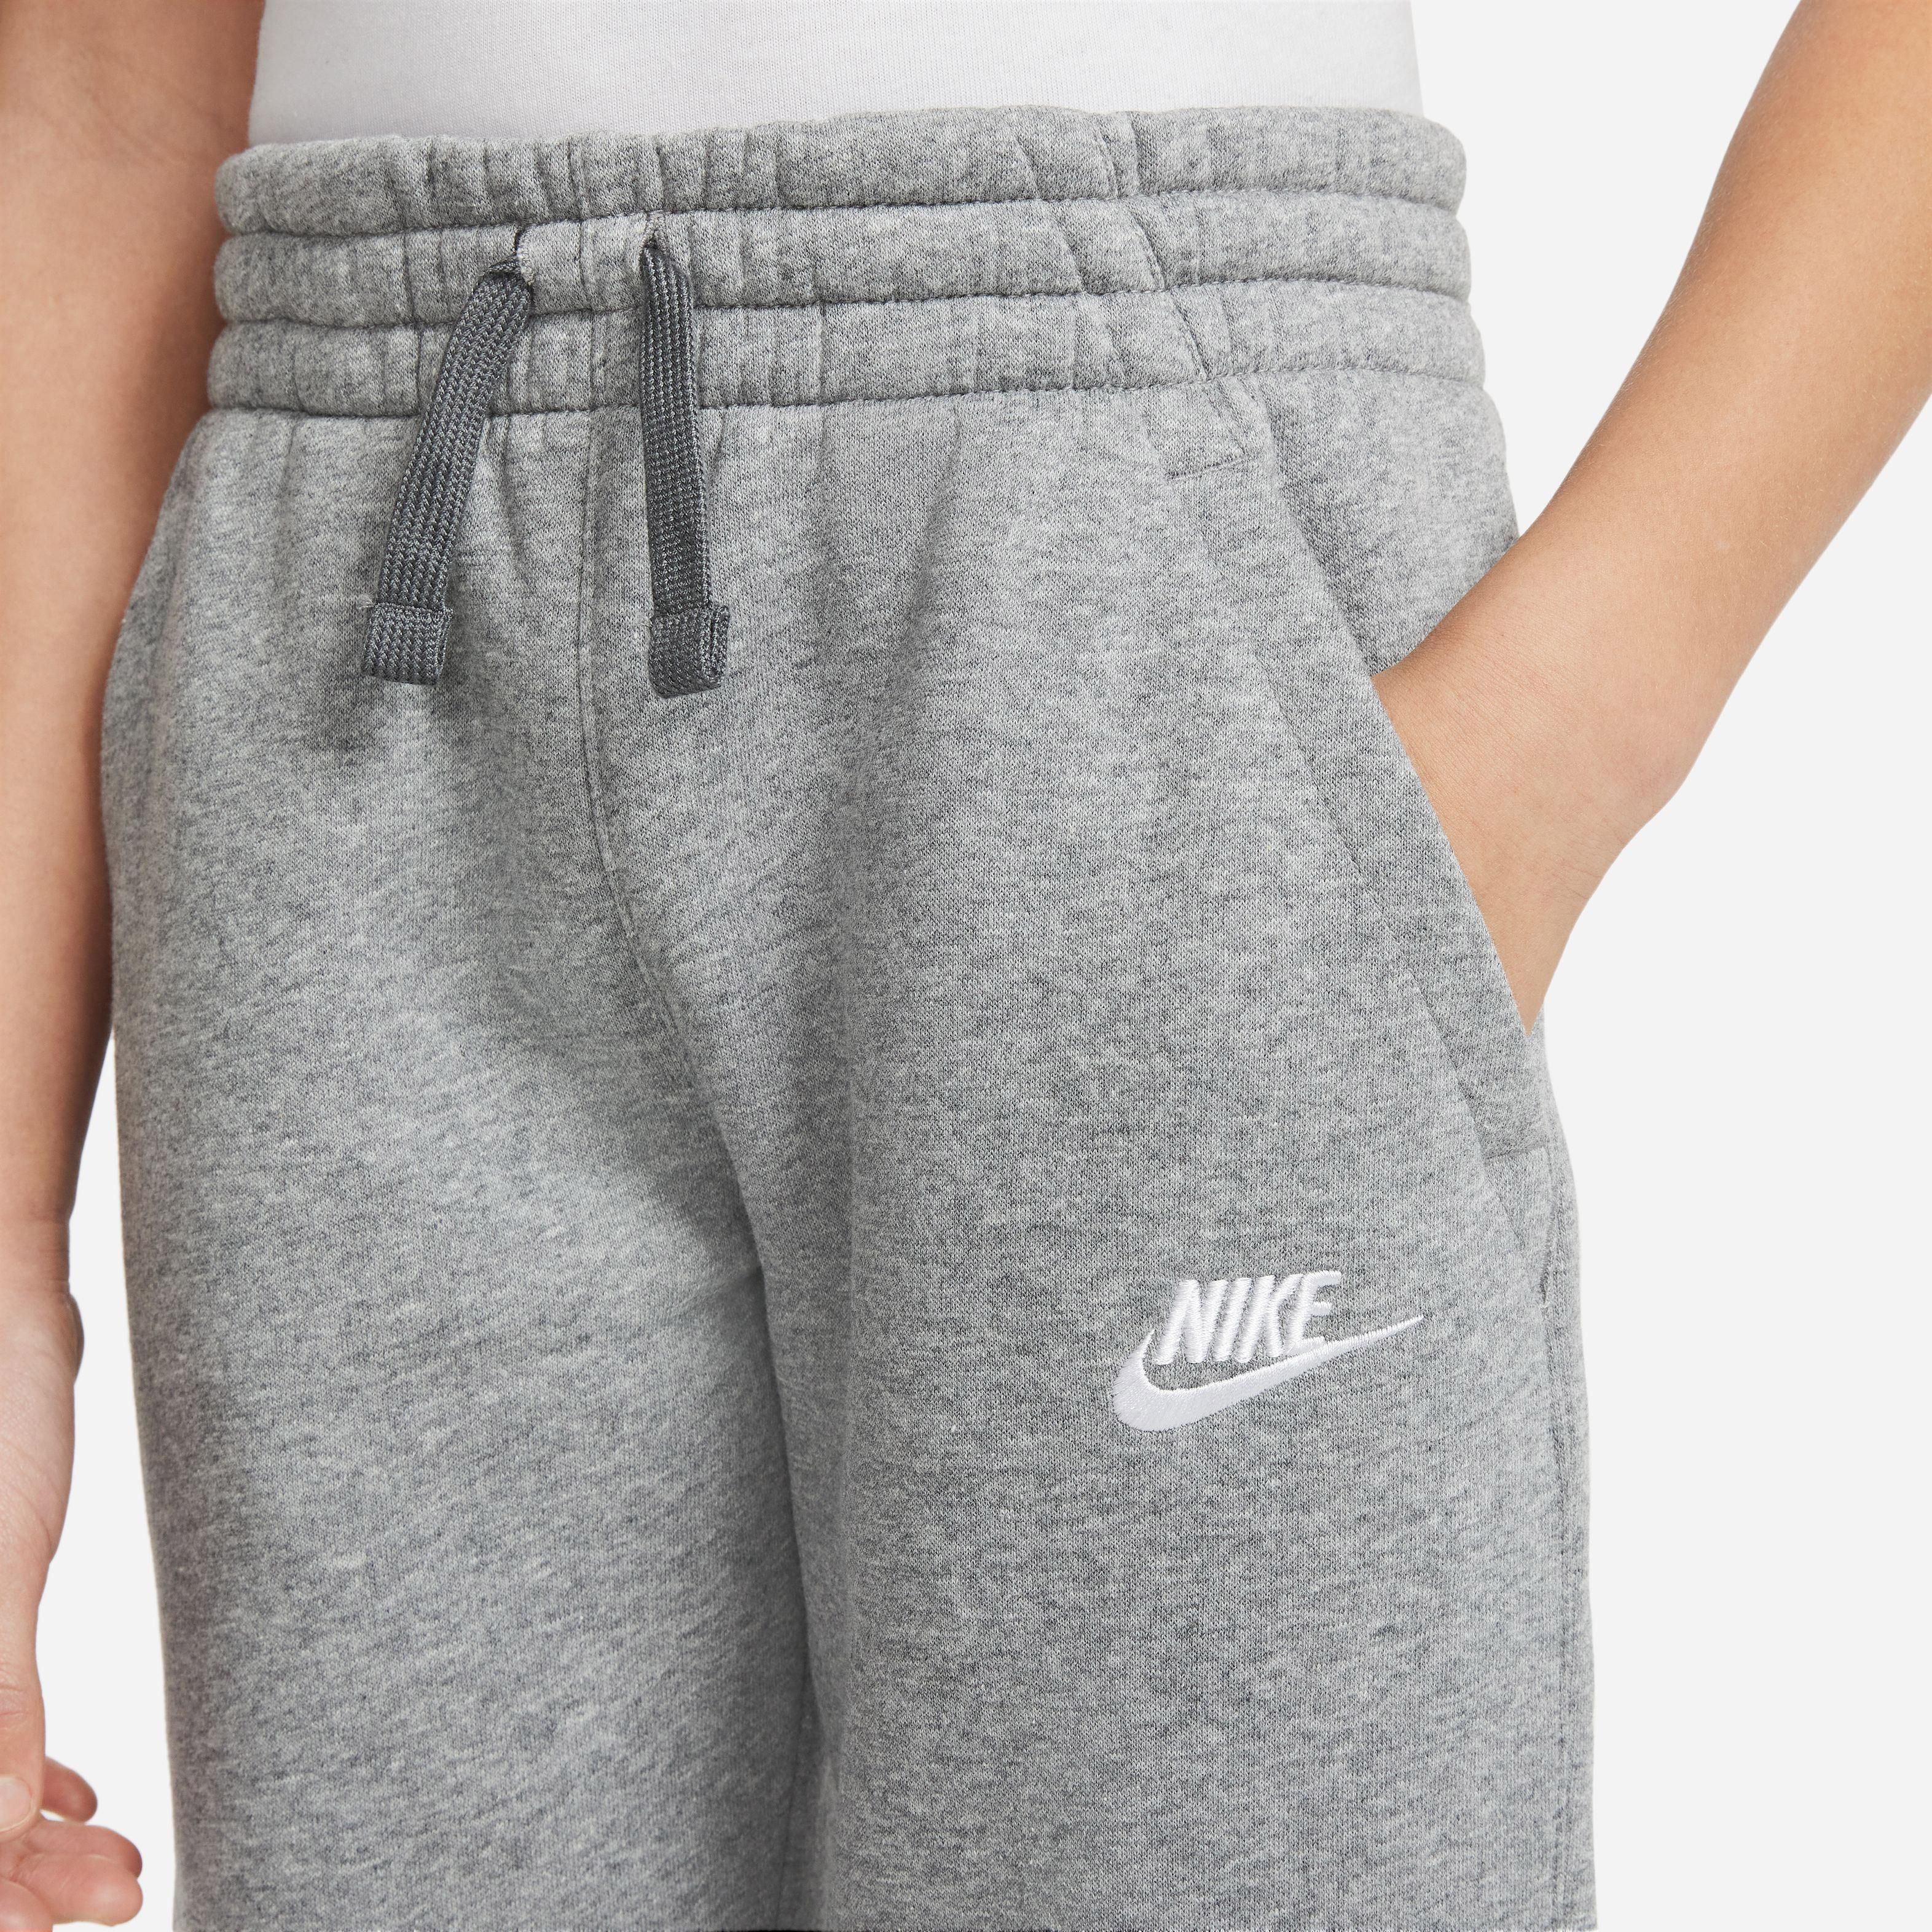 Nike NSW CORE von grey-white Trainingsanzug Shop SportScheck kaufen Online Jungen carbon im heather-dark